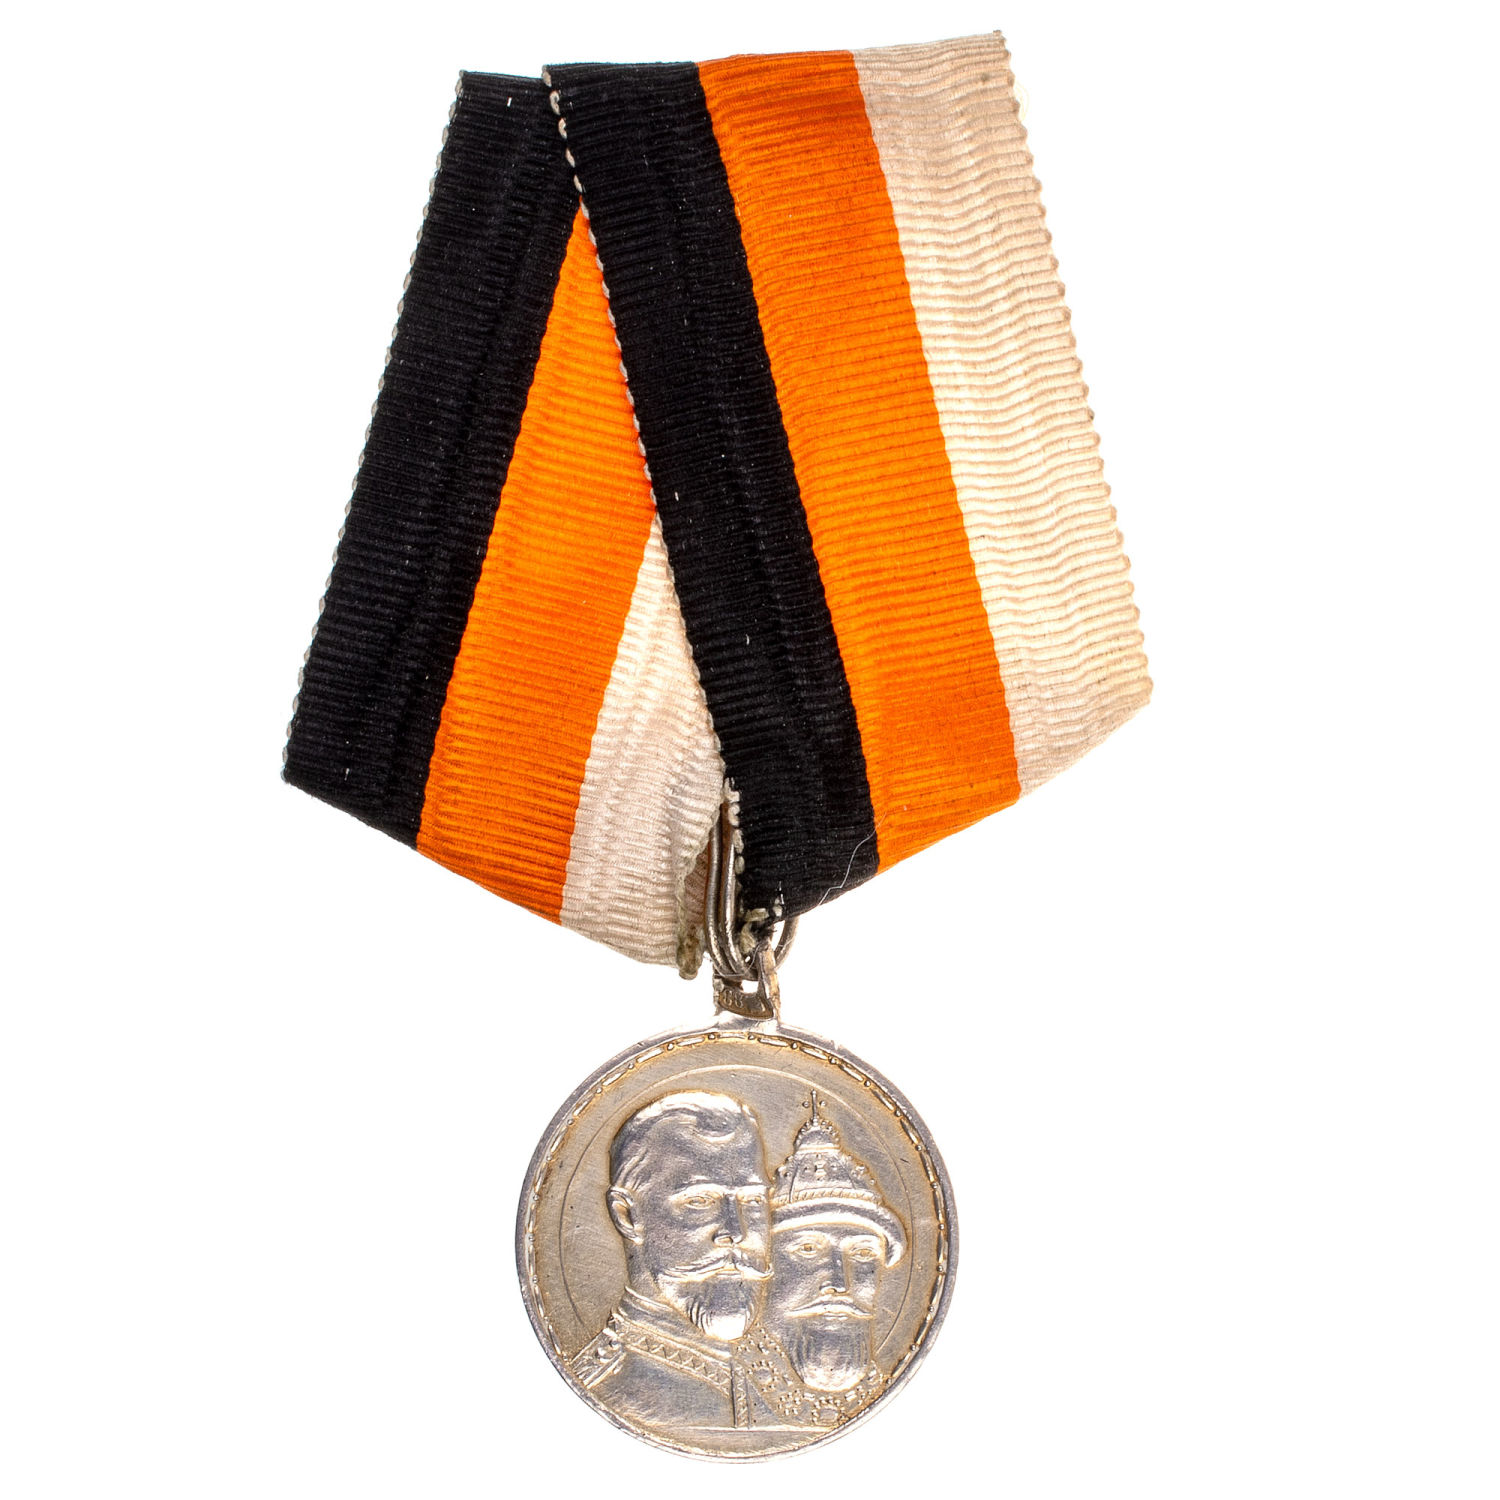 Медаль "В память 300 - летия царствования Дома Романовых" на ленте. Частник. Серебро.